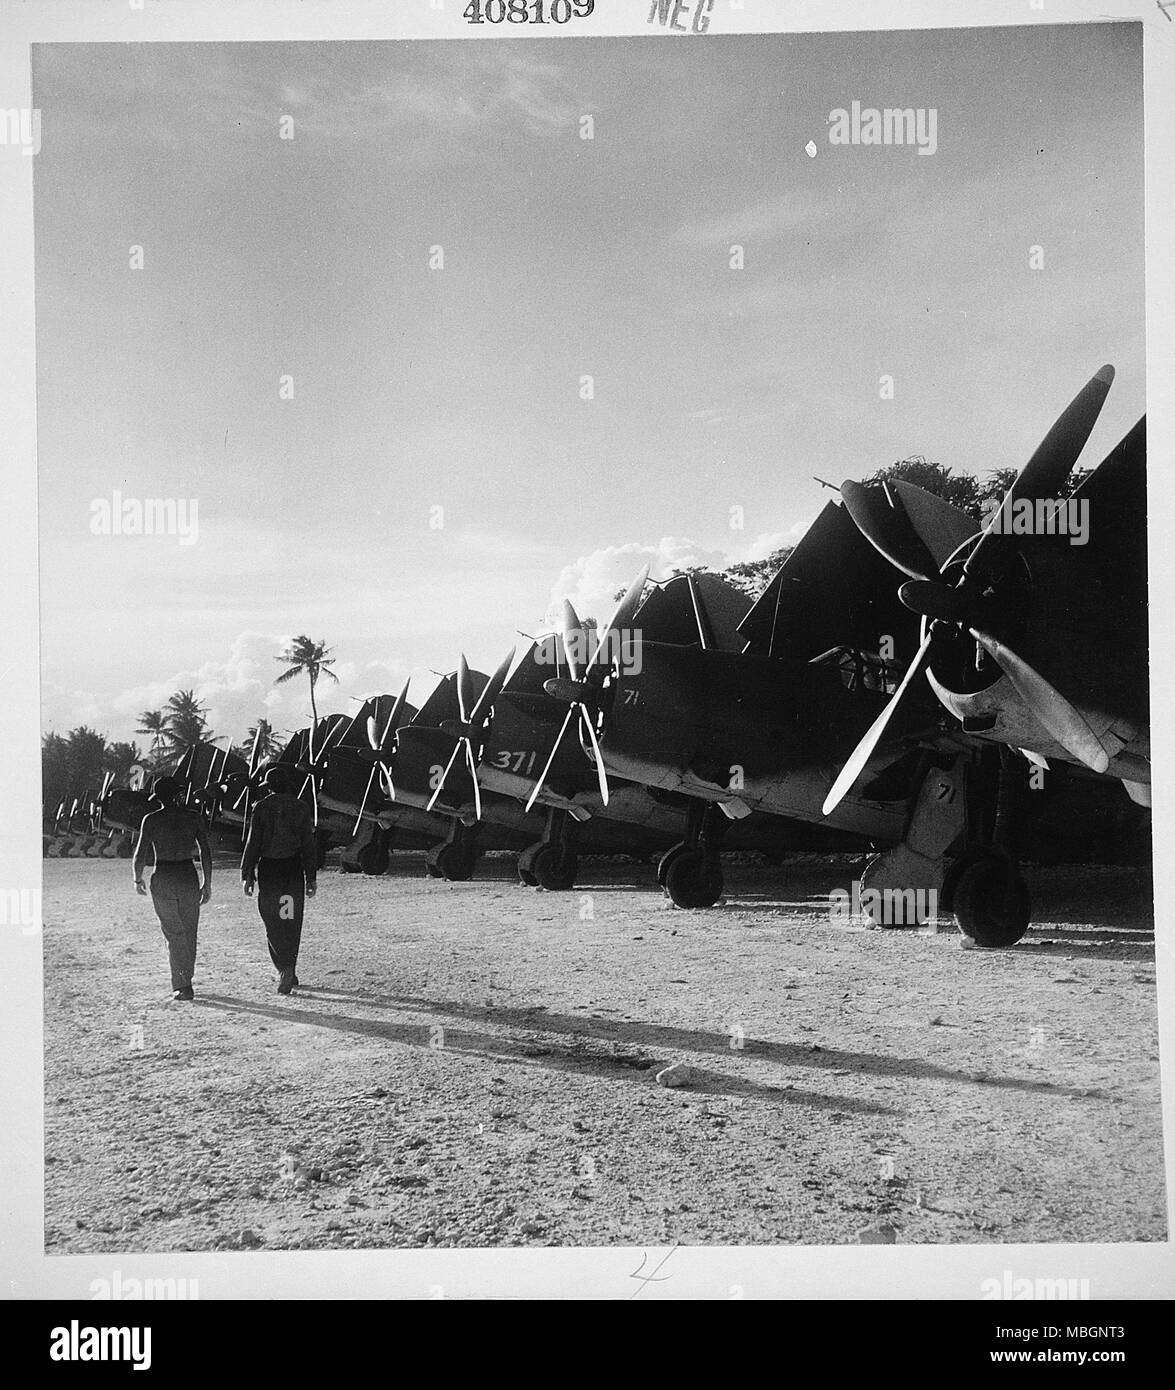 Les Marines américains sur l'île, l'atoll de Uluthi Falalop Banque D'Images